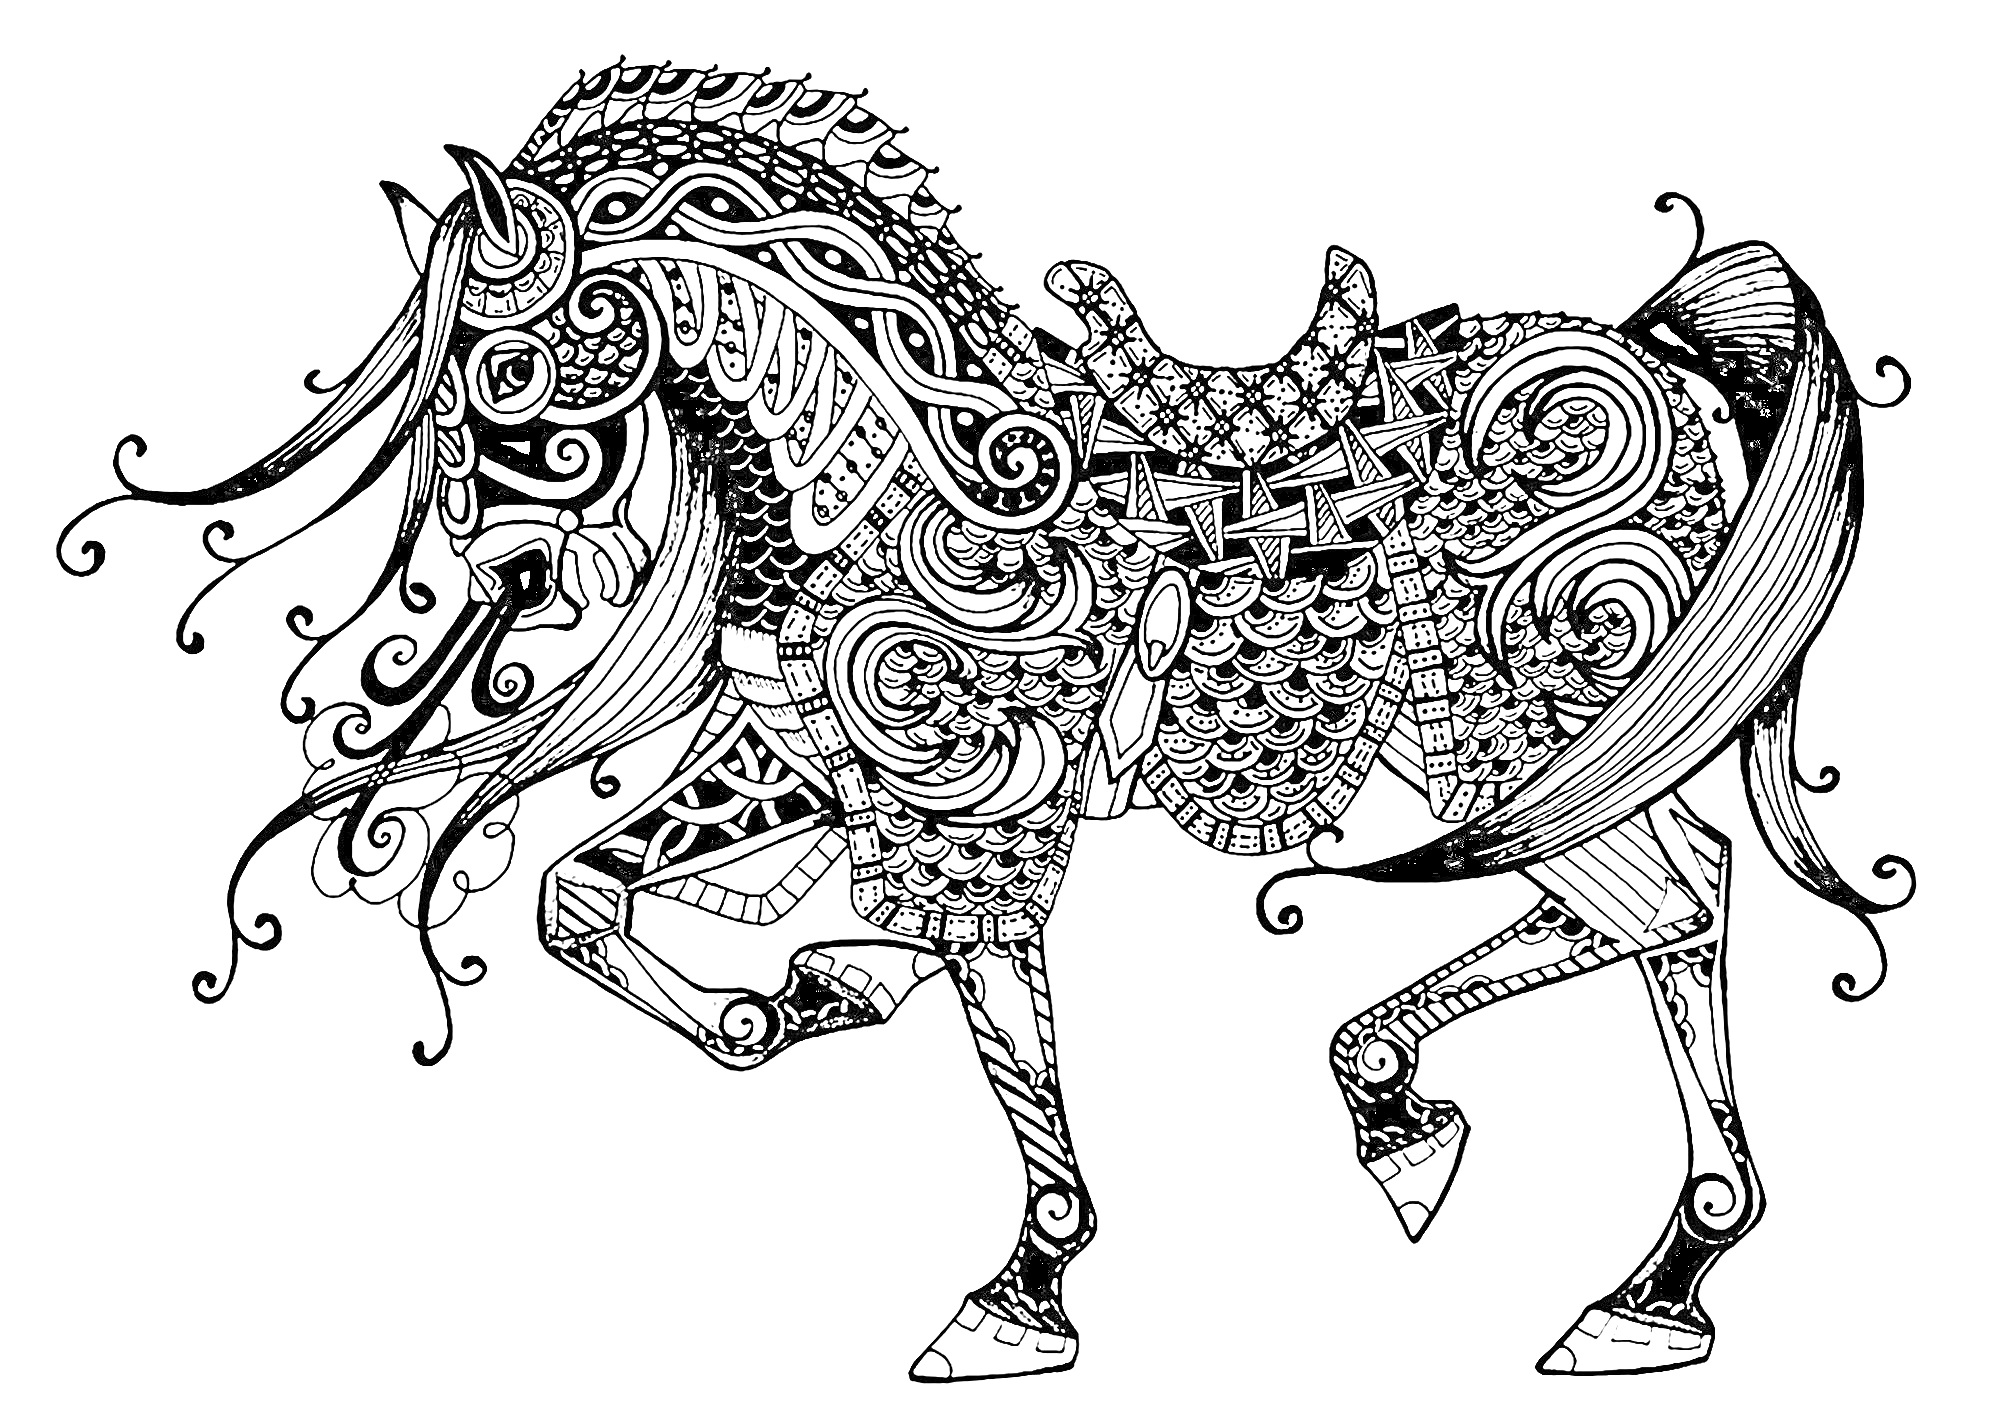 Раскраска Антистресс раскраска с лошадью, украшенной сложными геометрическими и растительными узорами